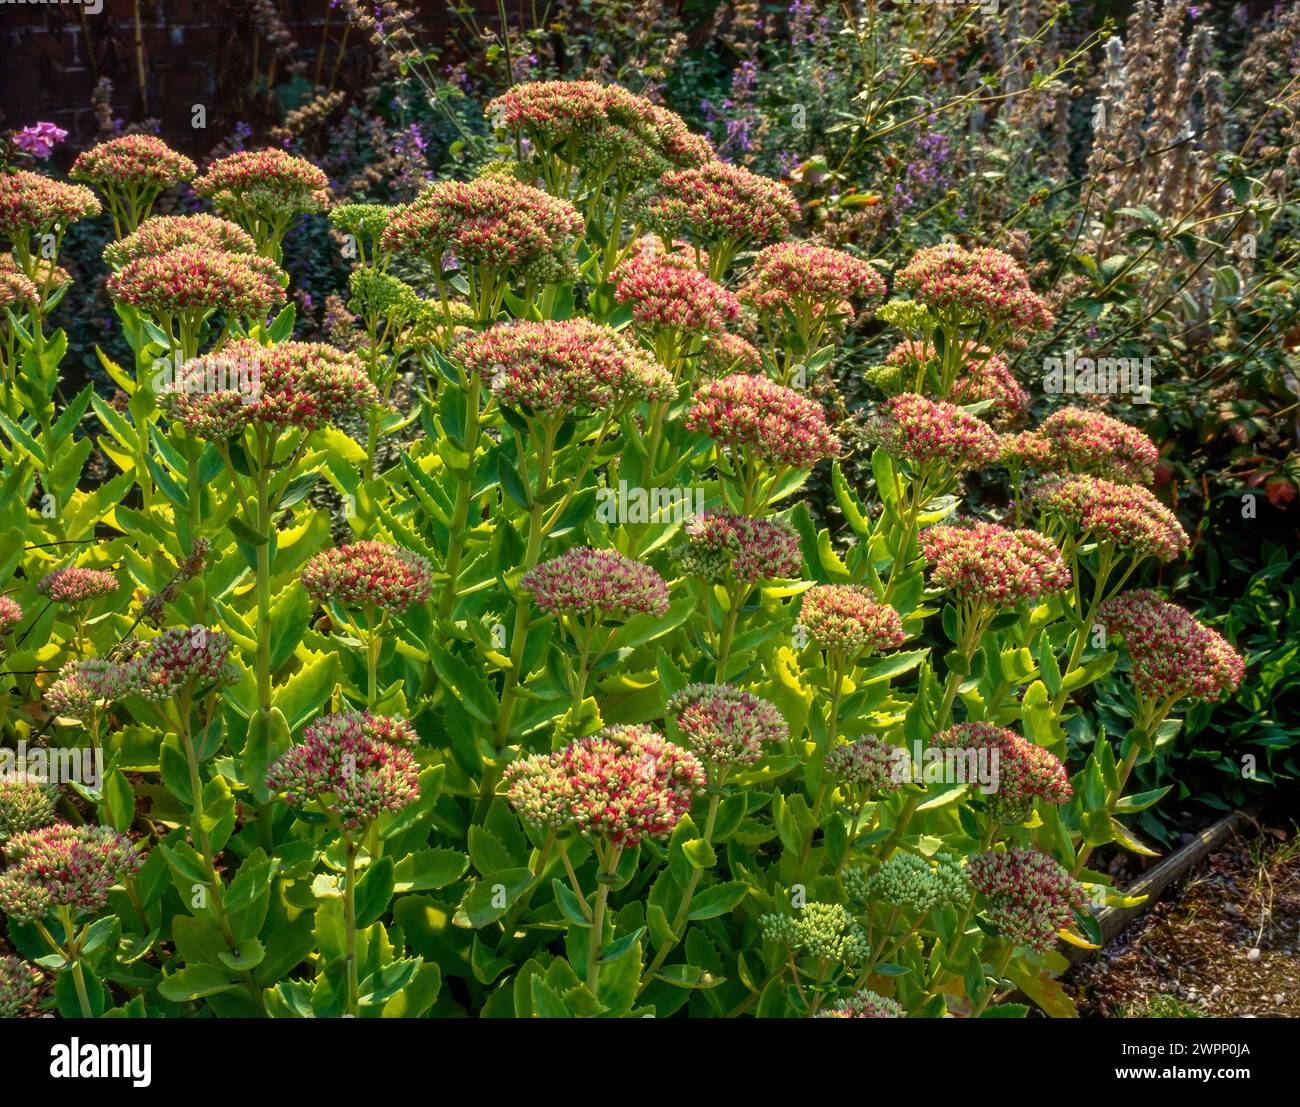 Sedum spectabile (plante de glace / pierre brillante / pierre à papillons) en fleur en croissance dans le jardin anglais frontière, Angleterre, Royaume-Uni Banque D'Images